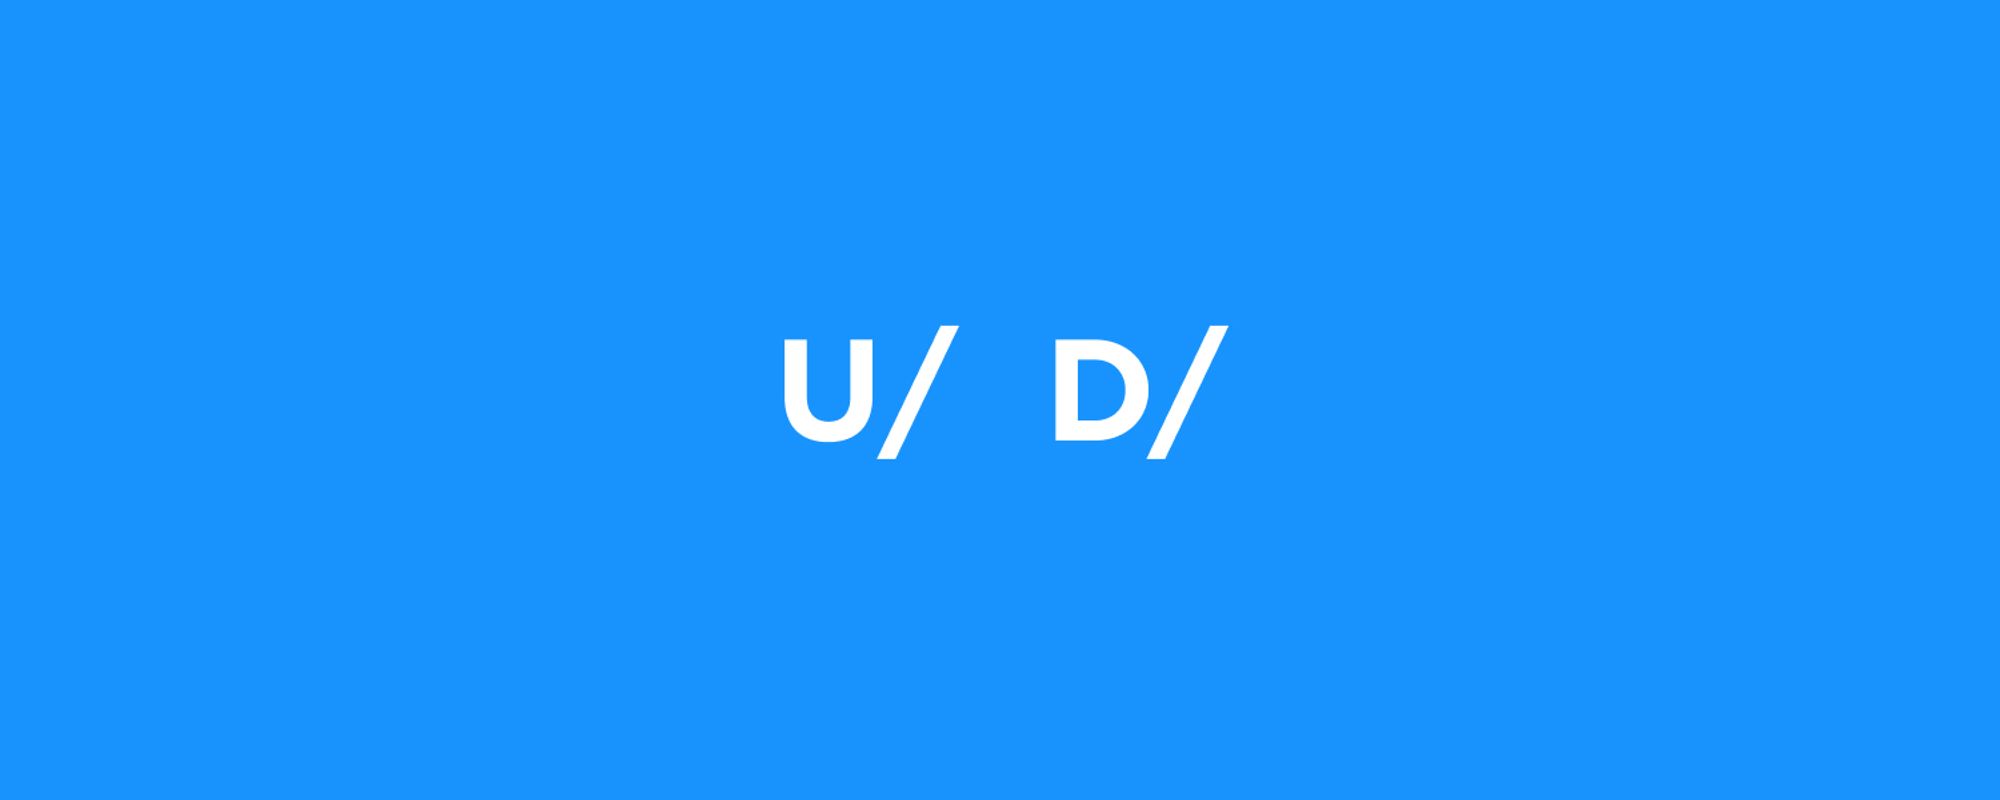 我在社区里看到的 “U/” 和 “D/” 是什么？